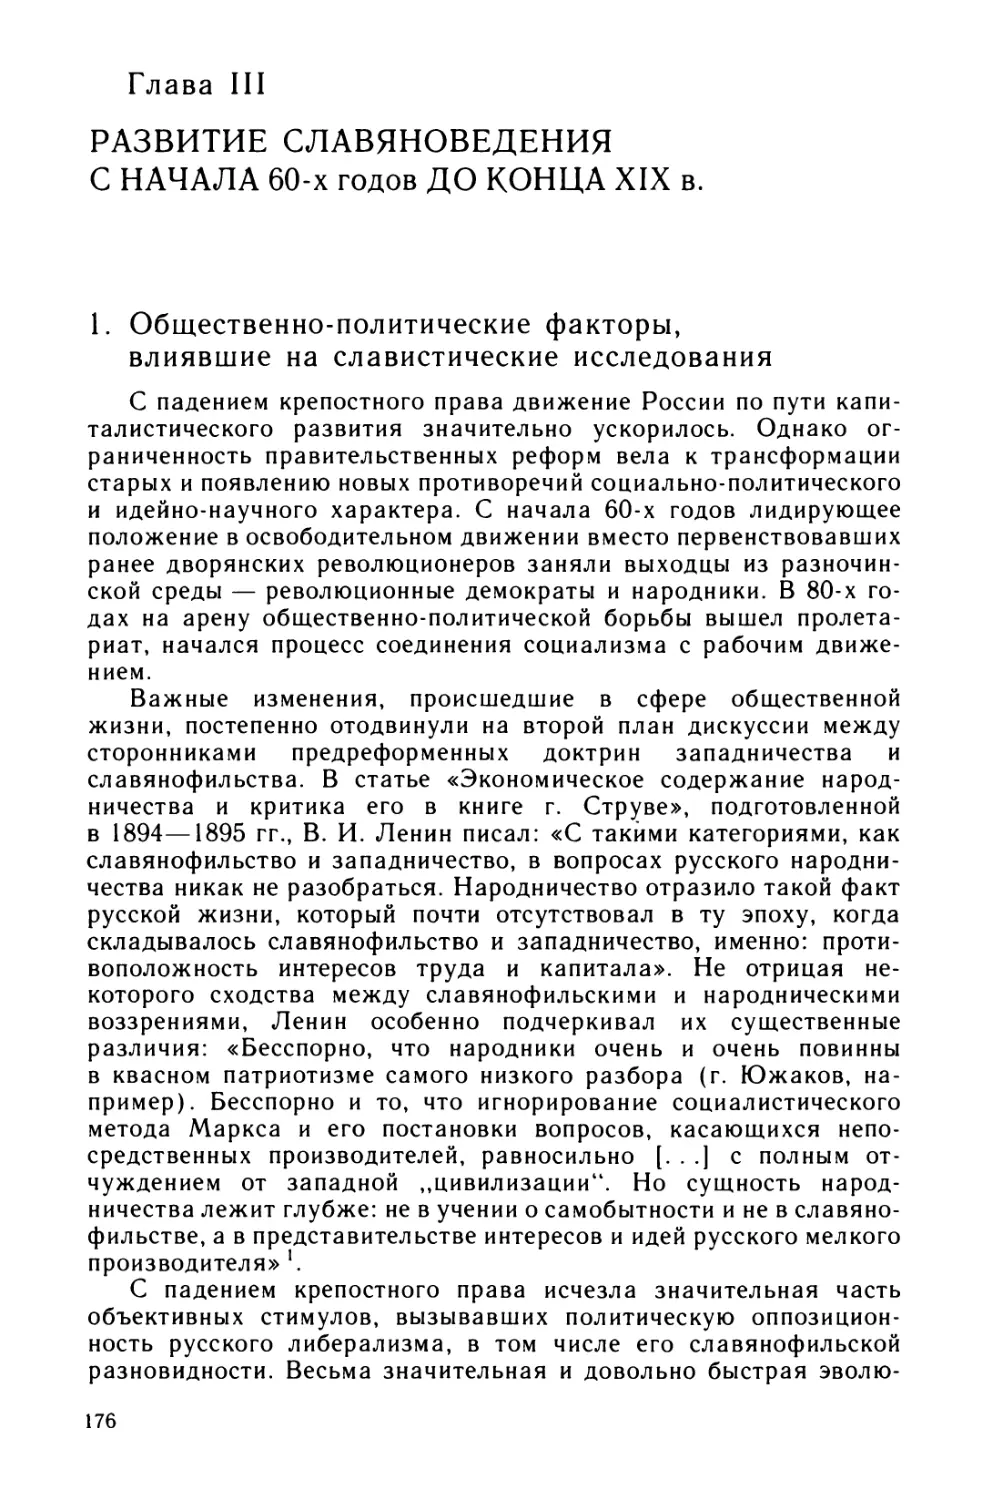 Глава III. Развитие славяноведения с начала 60-х годов до конца XIX в.